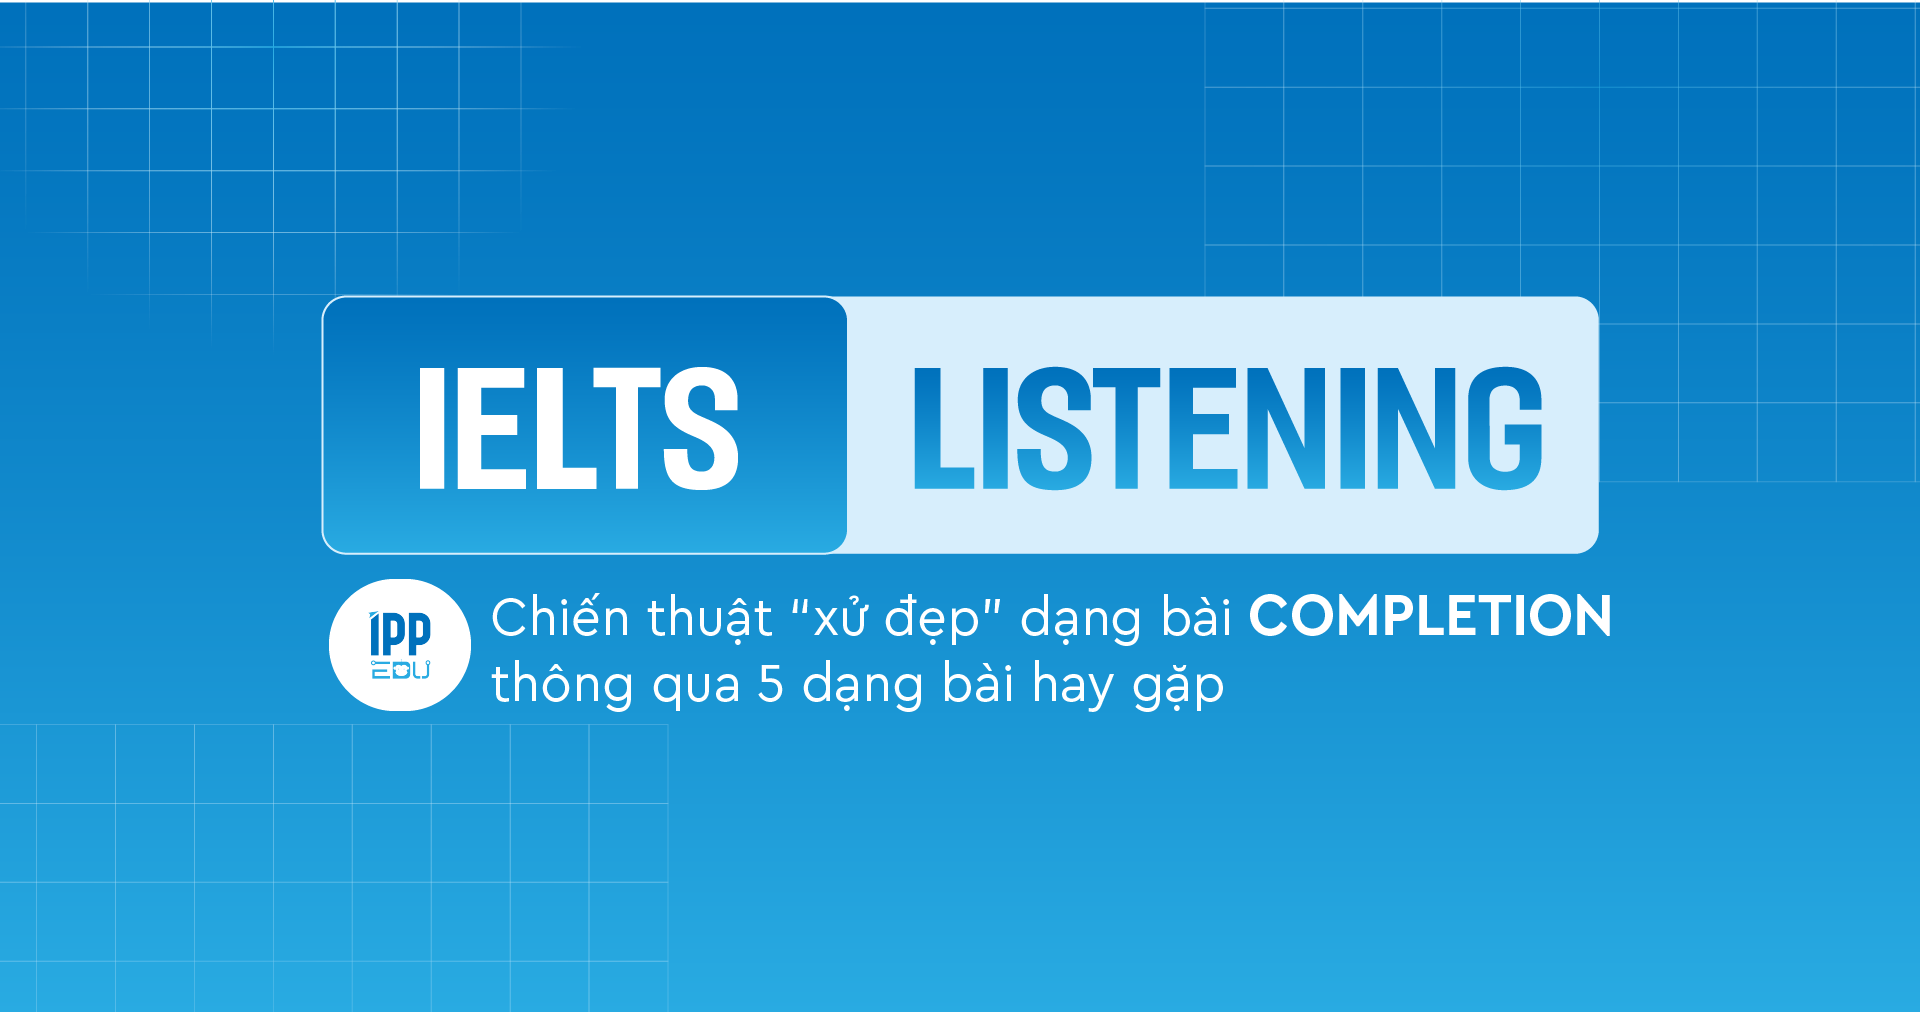 Chiến thuật “xử đẹp” dạng bài Completion thông qua 5 dạng bài hay gặp trong IELTS Listening